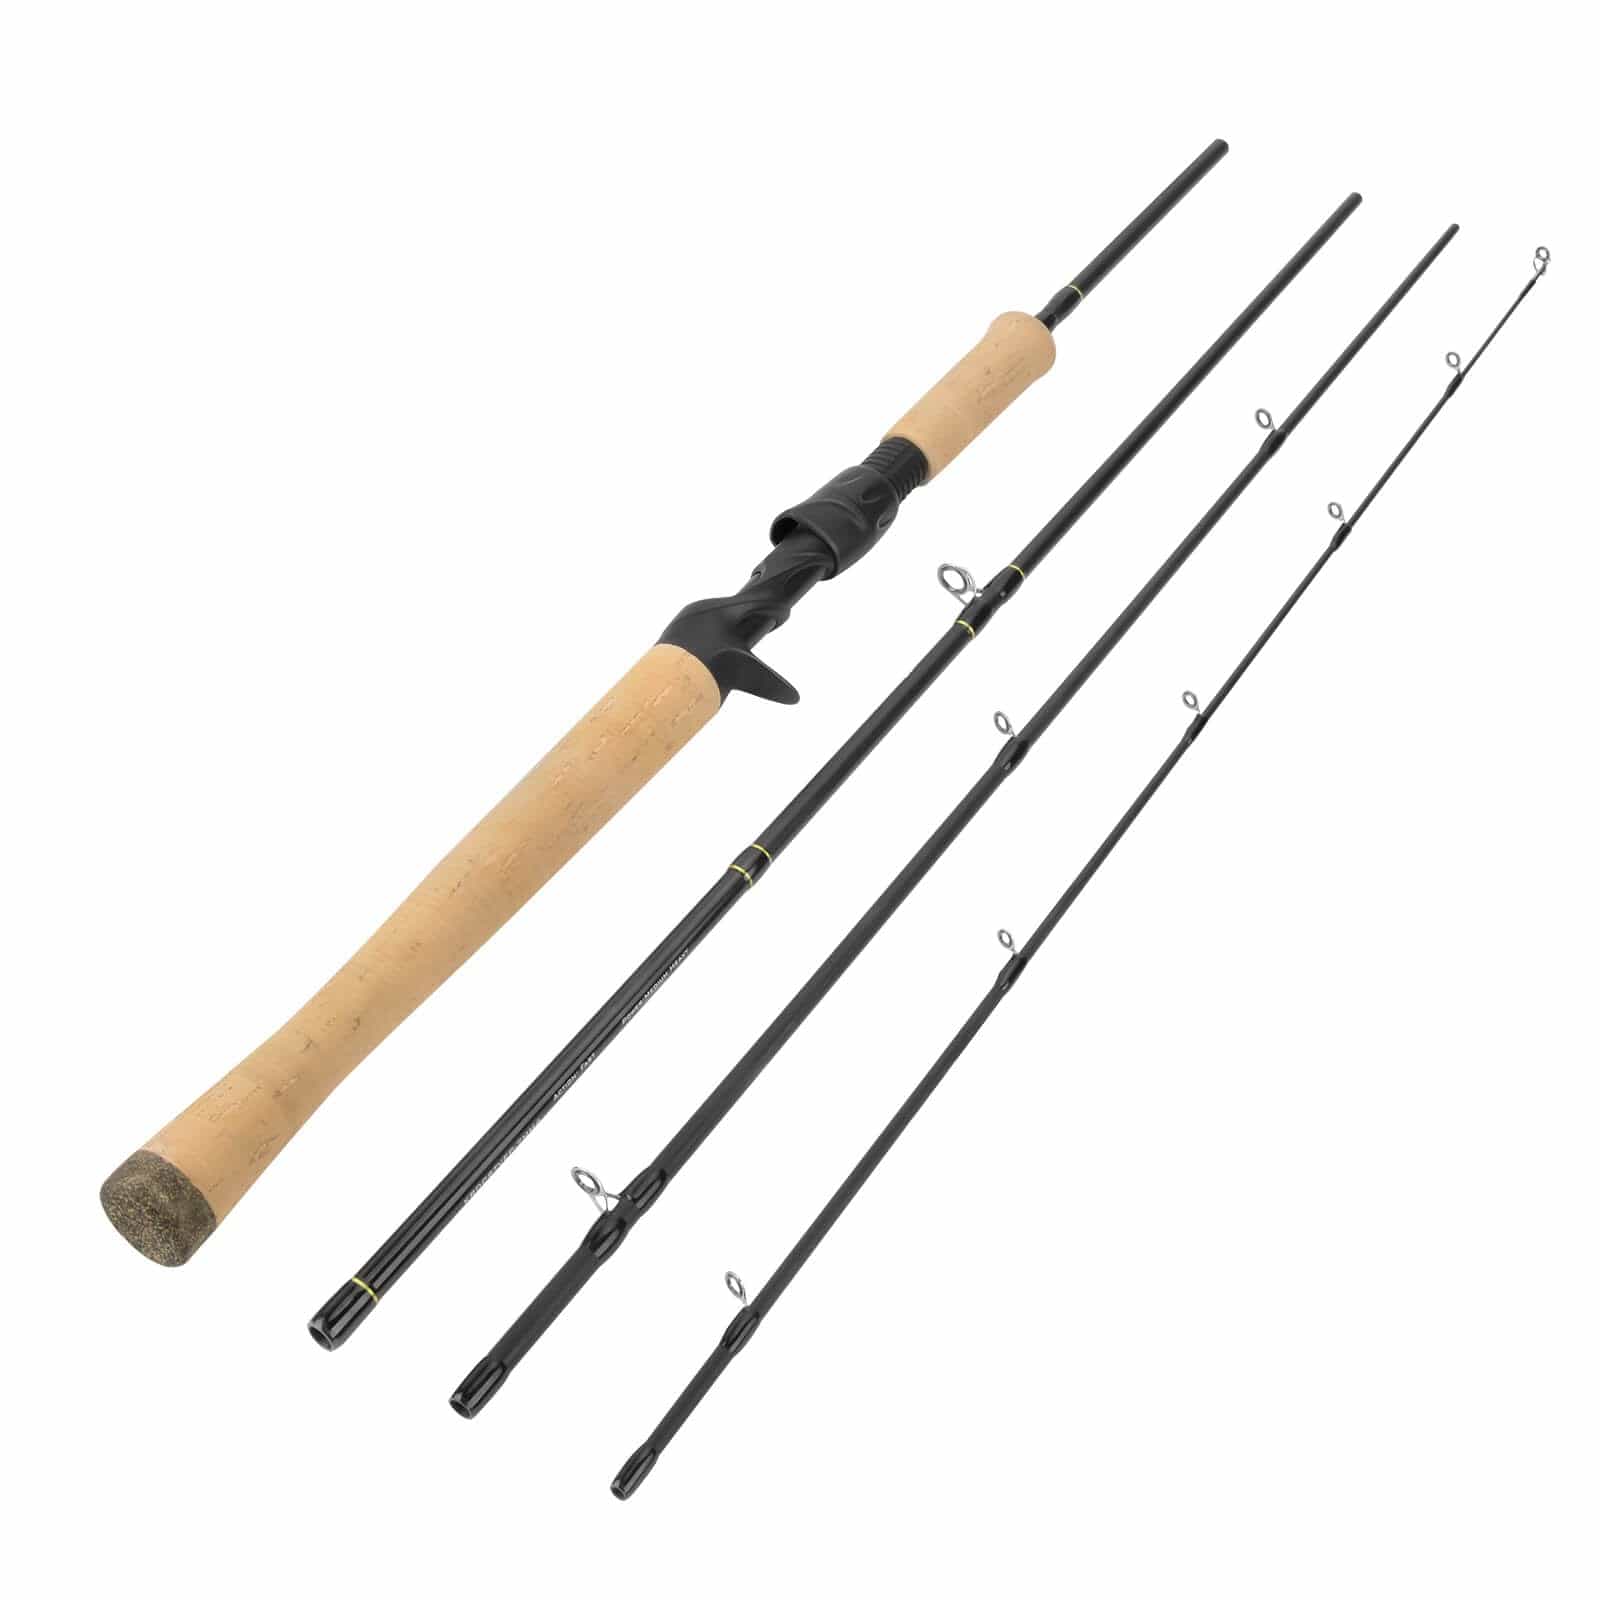  KastKing Patented V15 Vertical Fishing Rod Holder